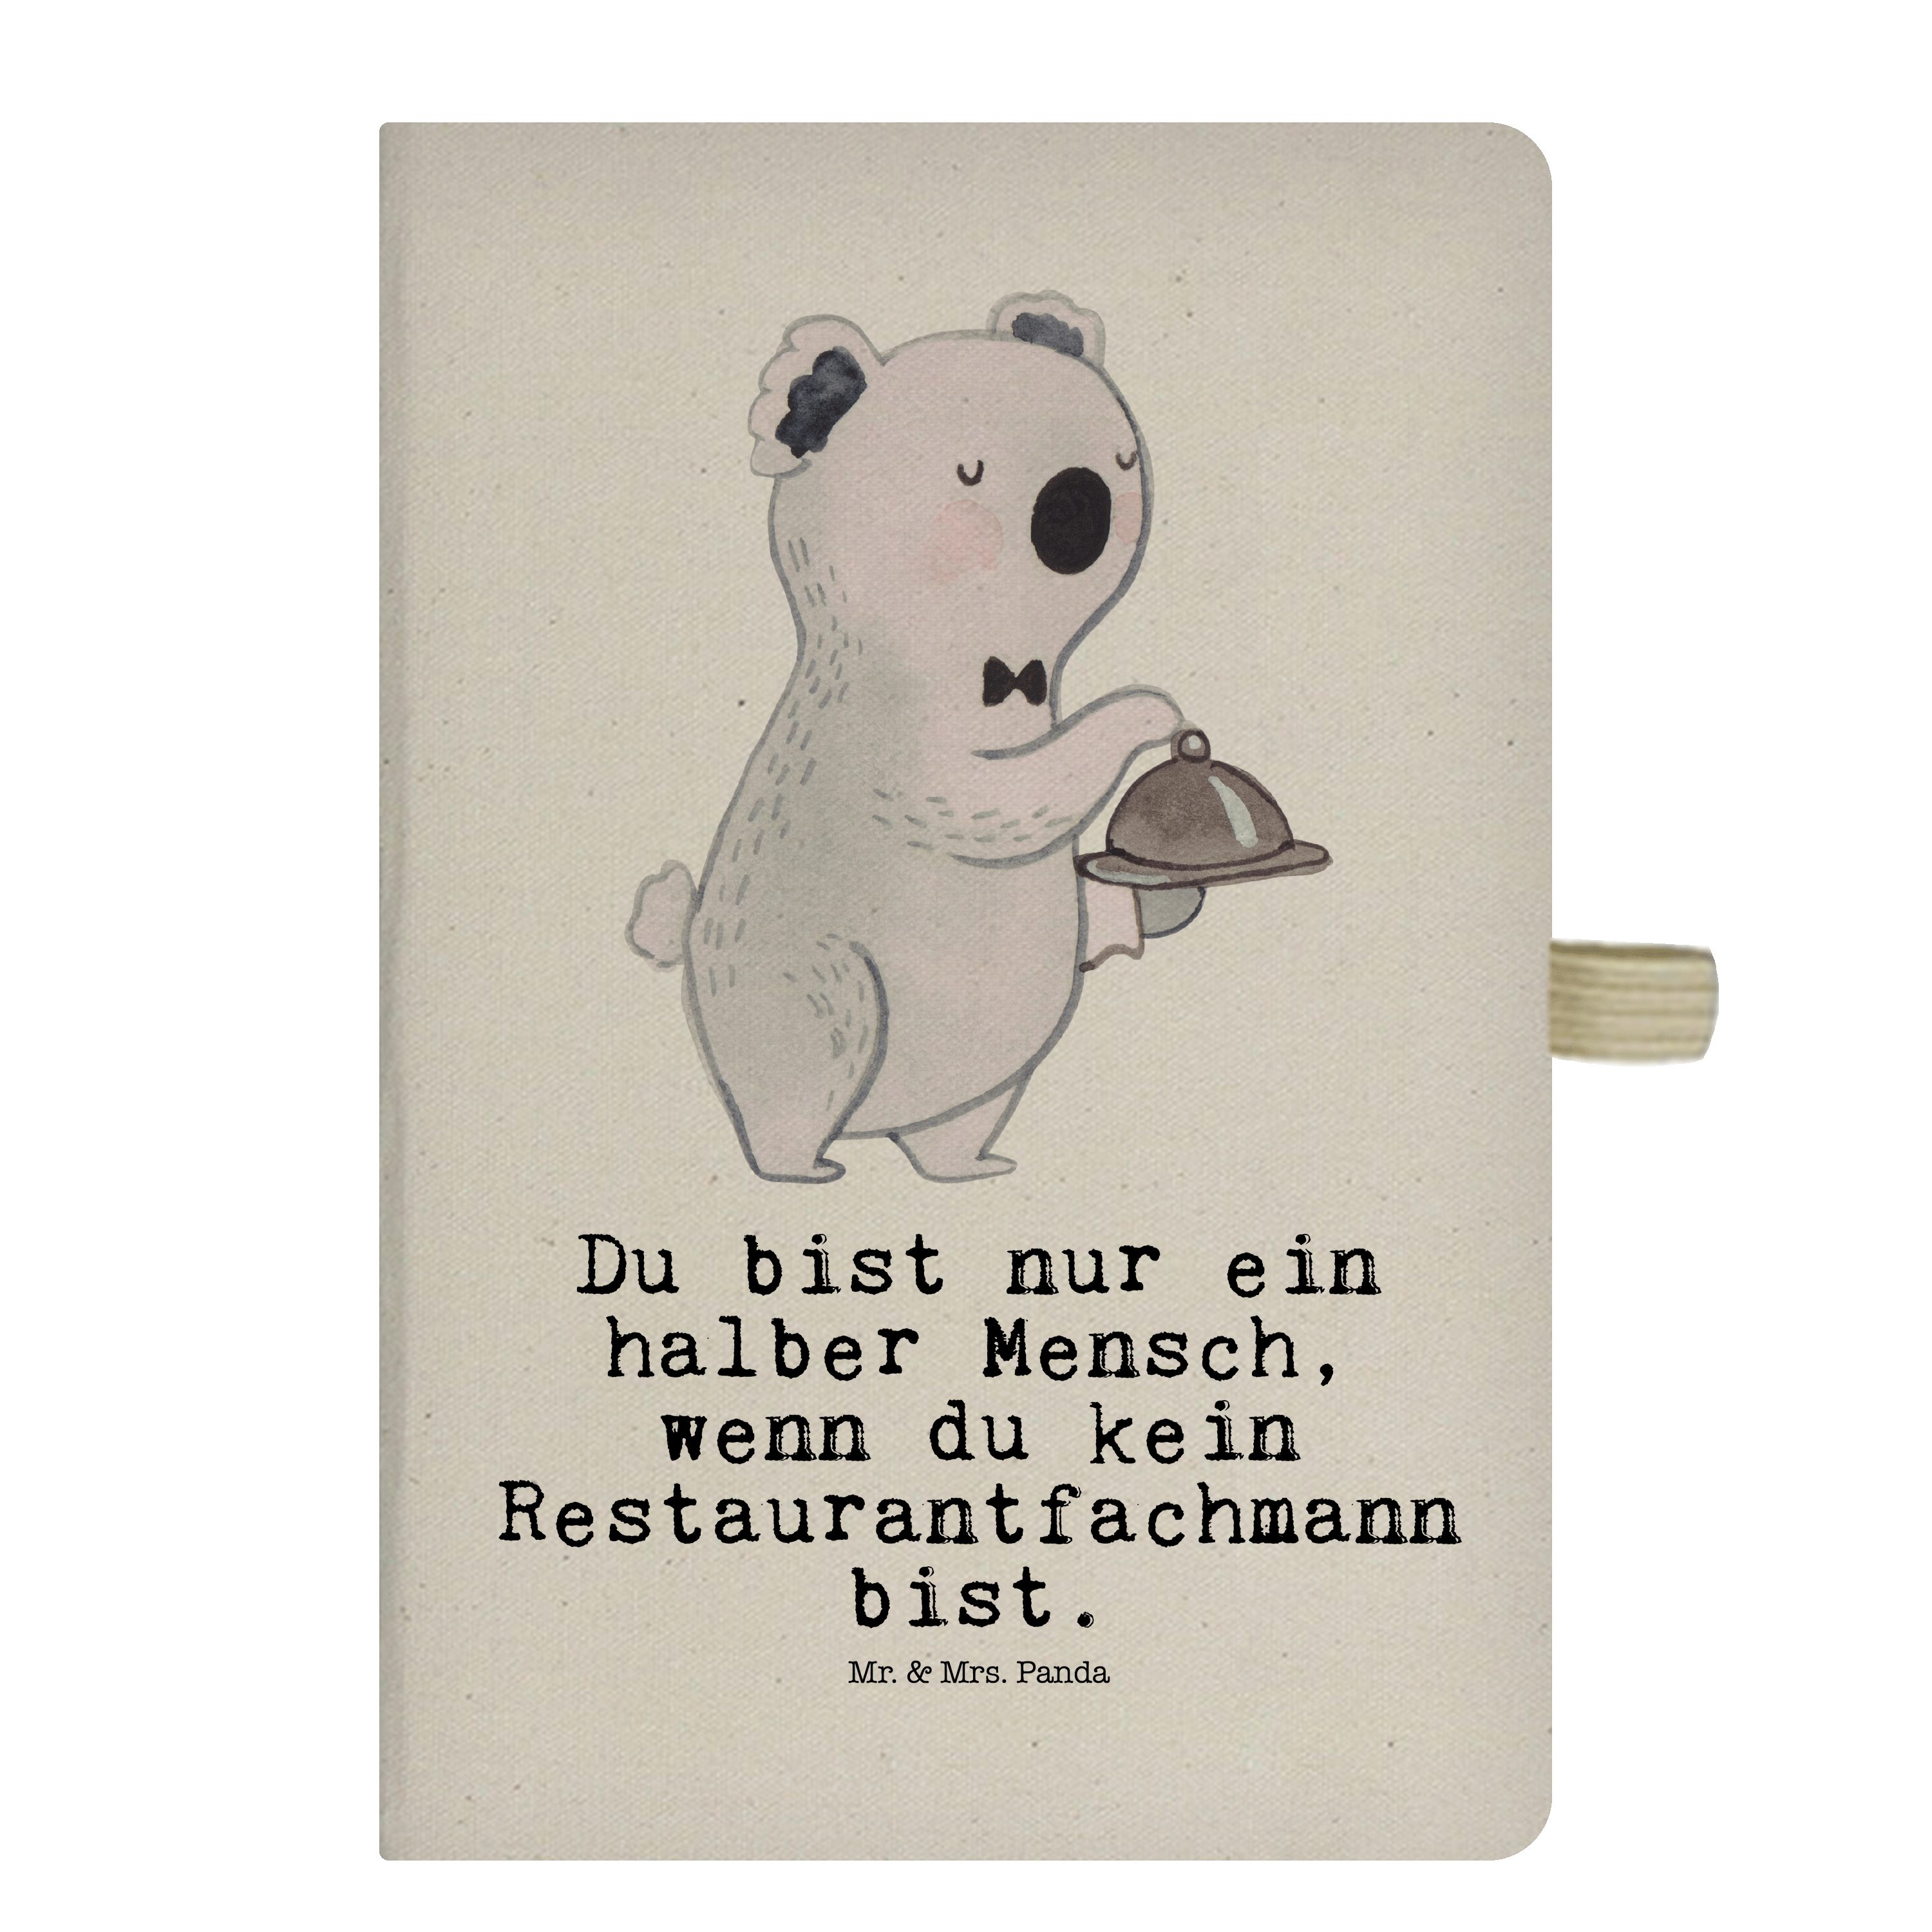 Mr. & Mrs. Panda Notizbuch Restaurantfachmann mit Herz - Transparent - Geschenk, Notizen, Schrei Mr. & Mrs. Panda